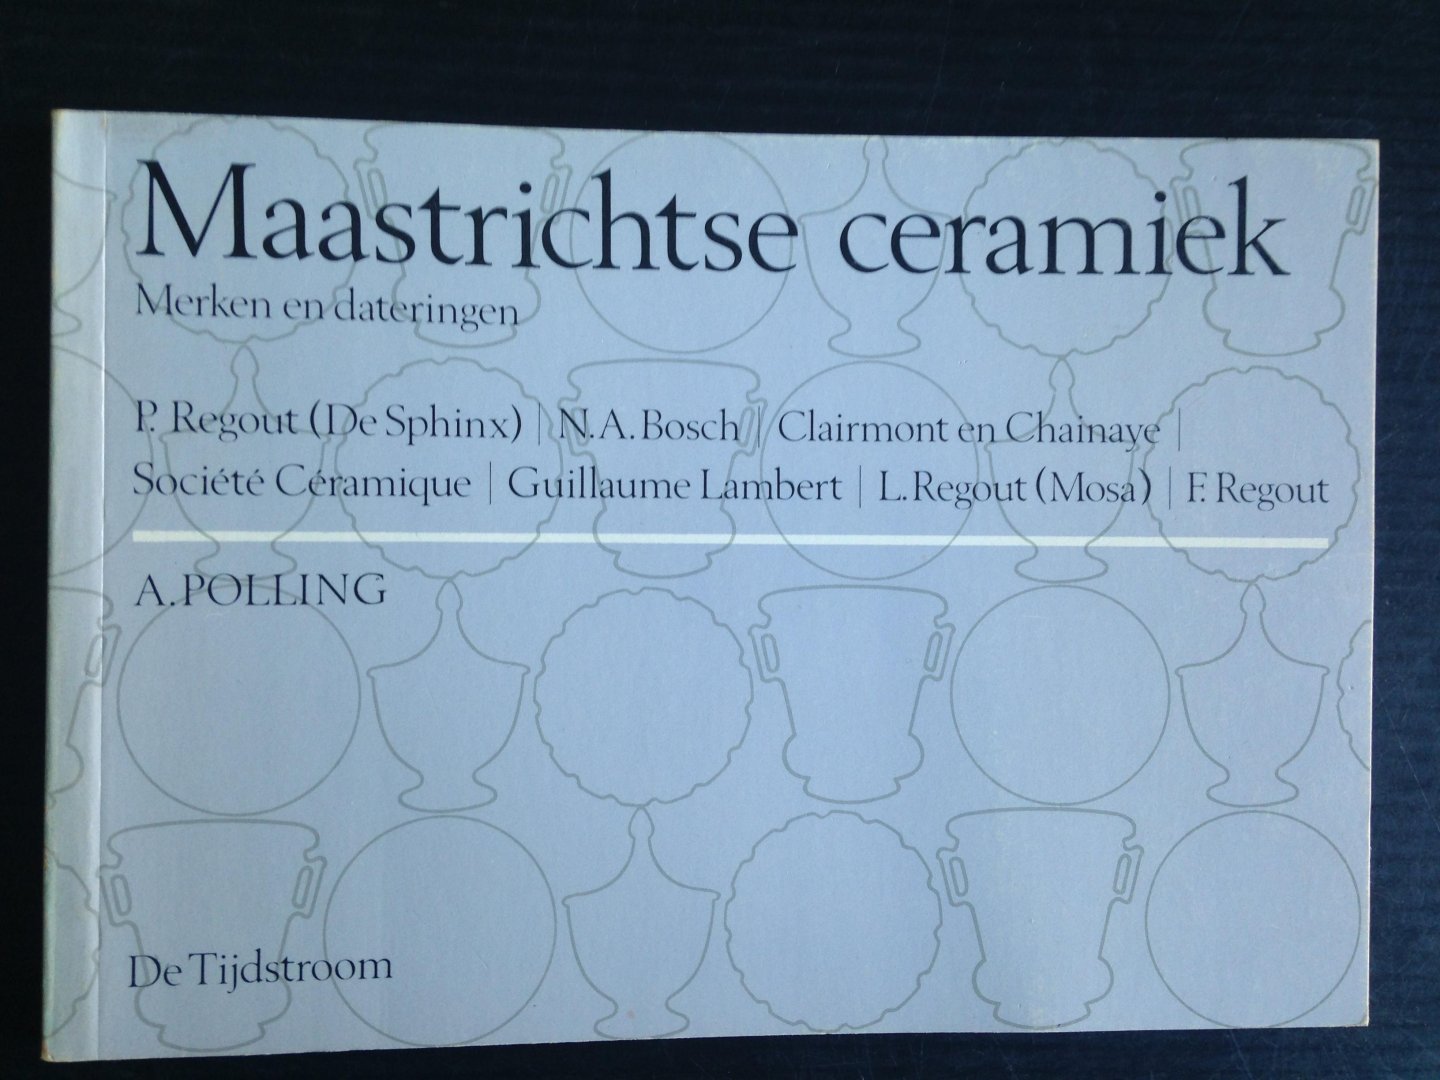 Polling, A. - Maastrichtse ceramiek, Merken en dateringen